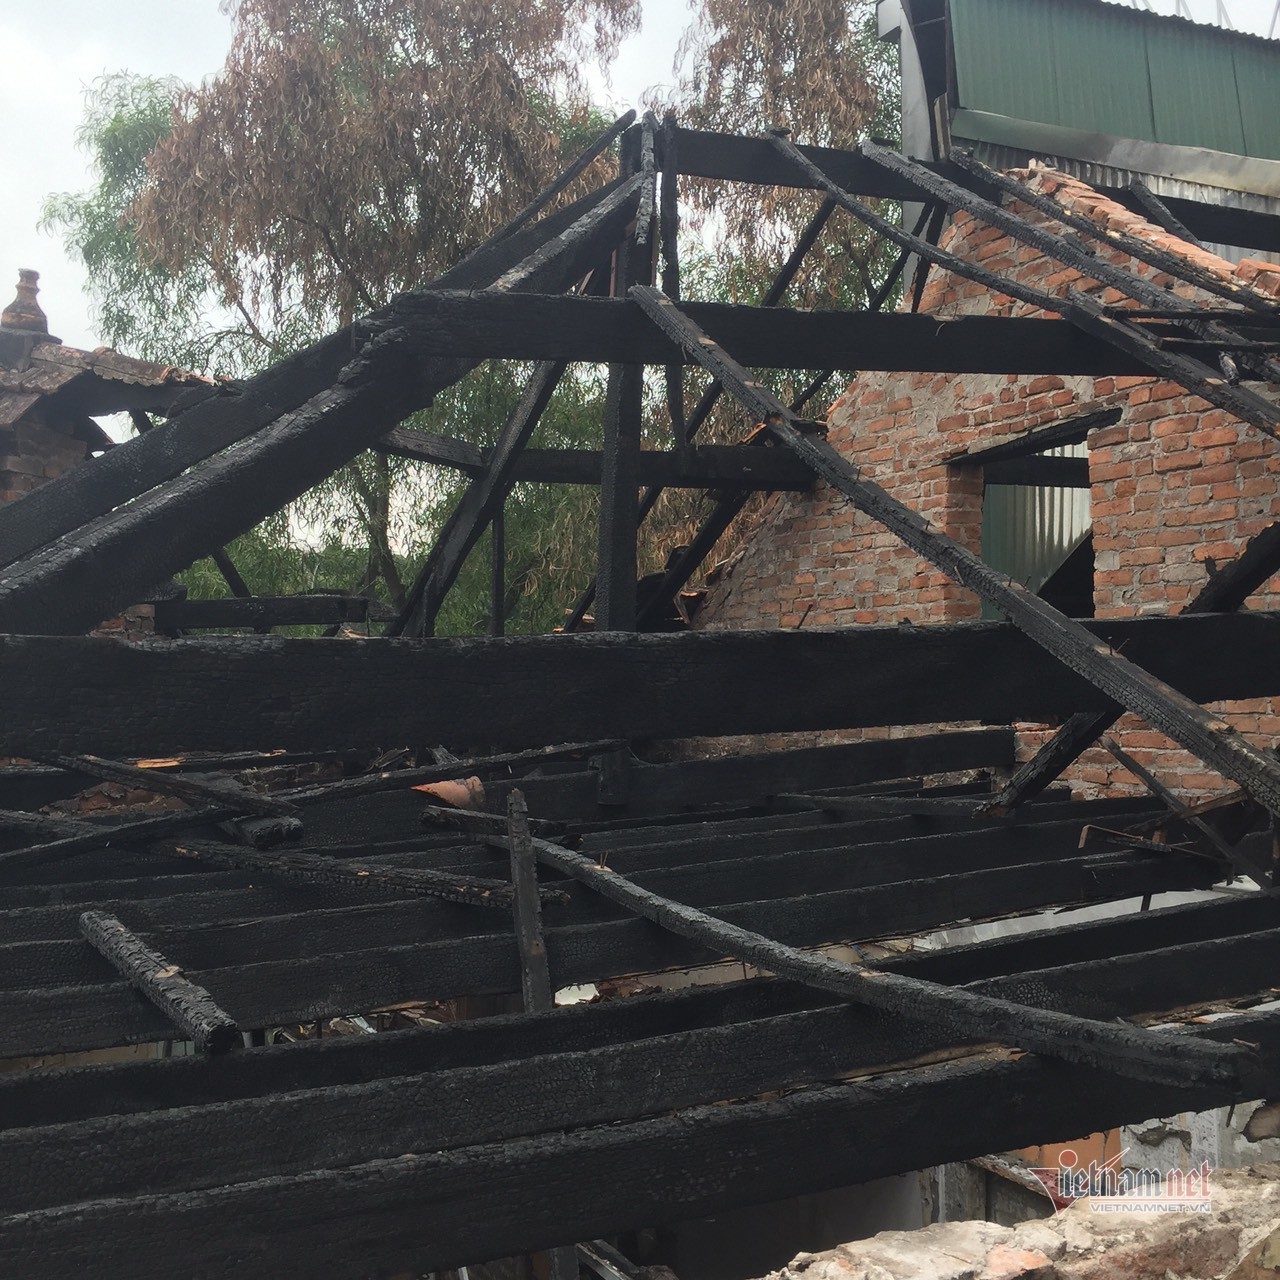 Hà Nội: Sáu hộ dân ở nhà cổ trăm tuổi bỗng xung đột sau vụ hỏa hoạn